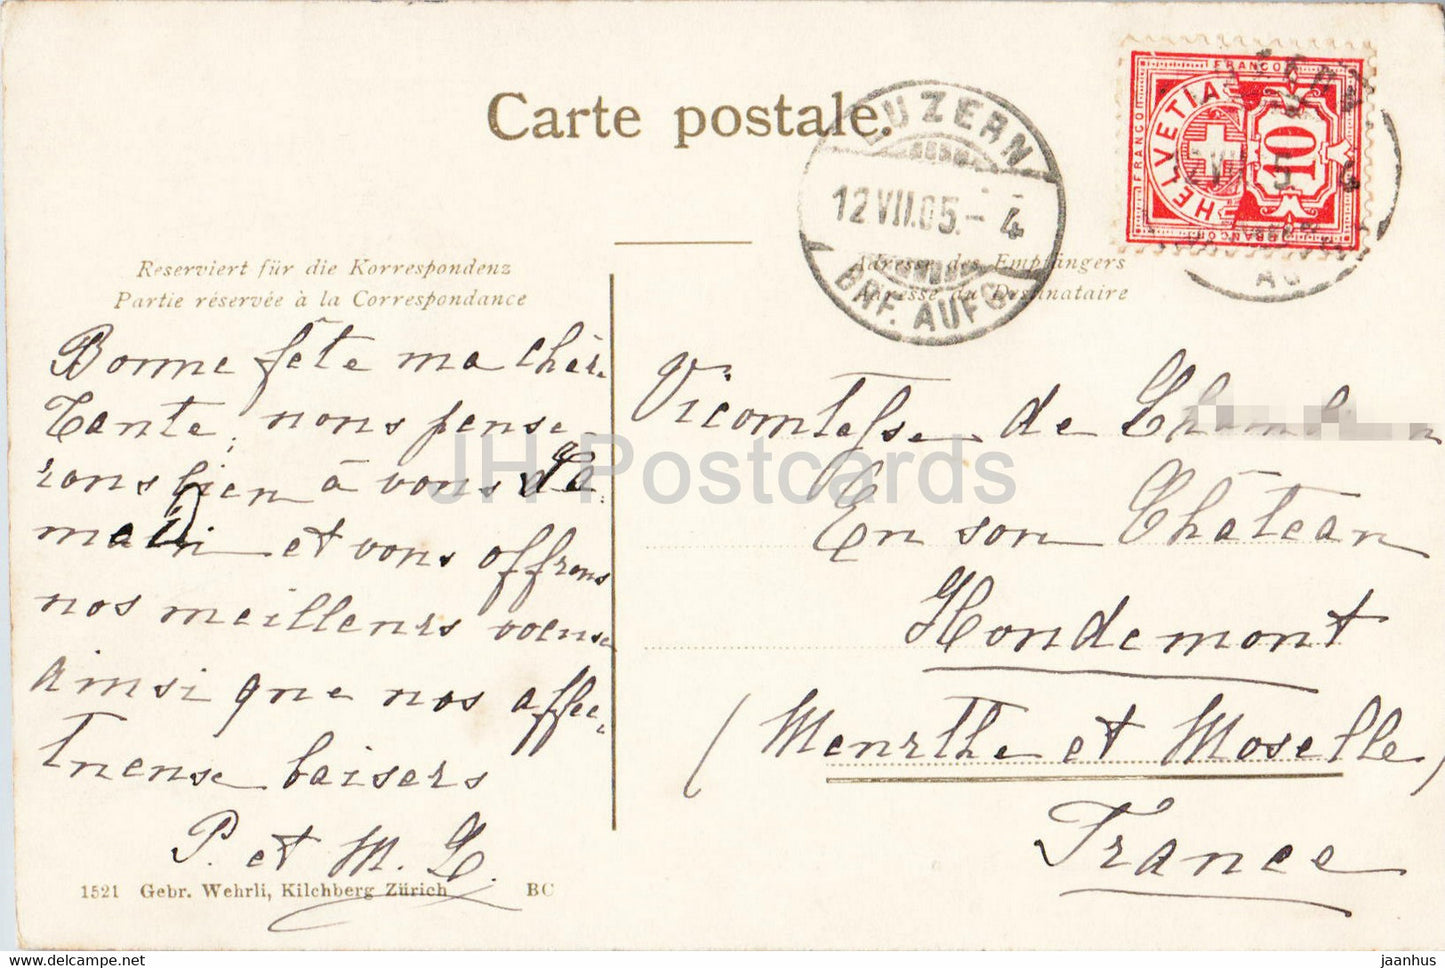 Luzern und die Alpen - Lucerne - carte postale ancienne - 1905 - Suisse - utilisé